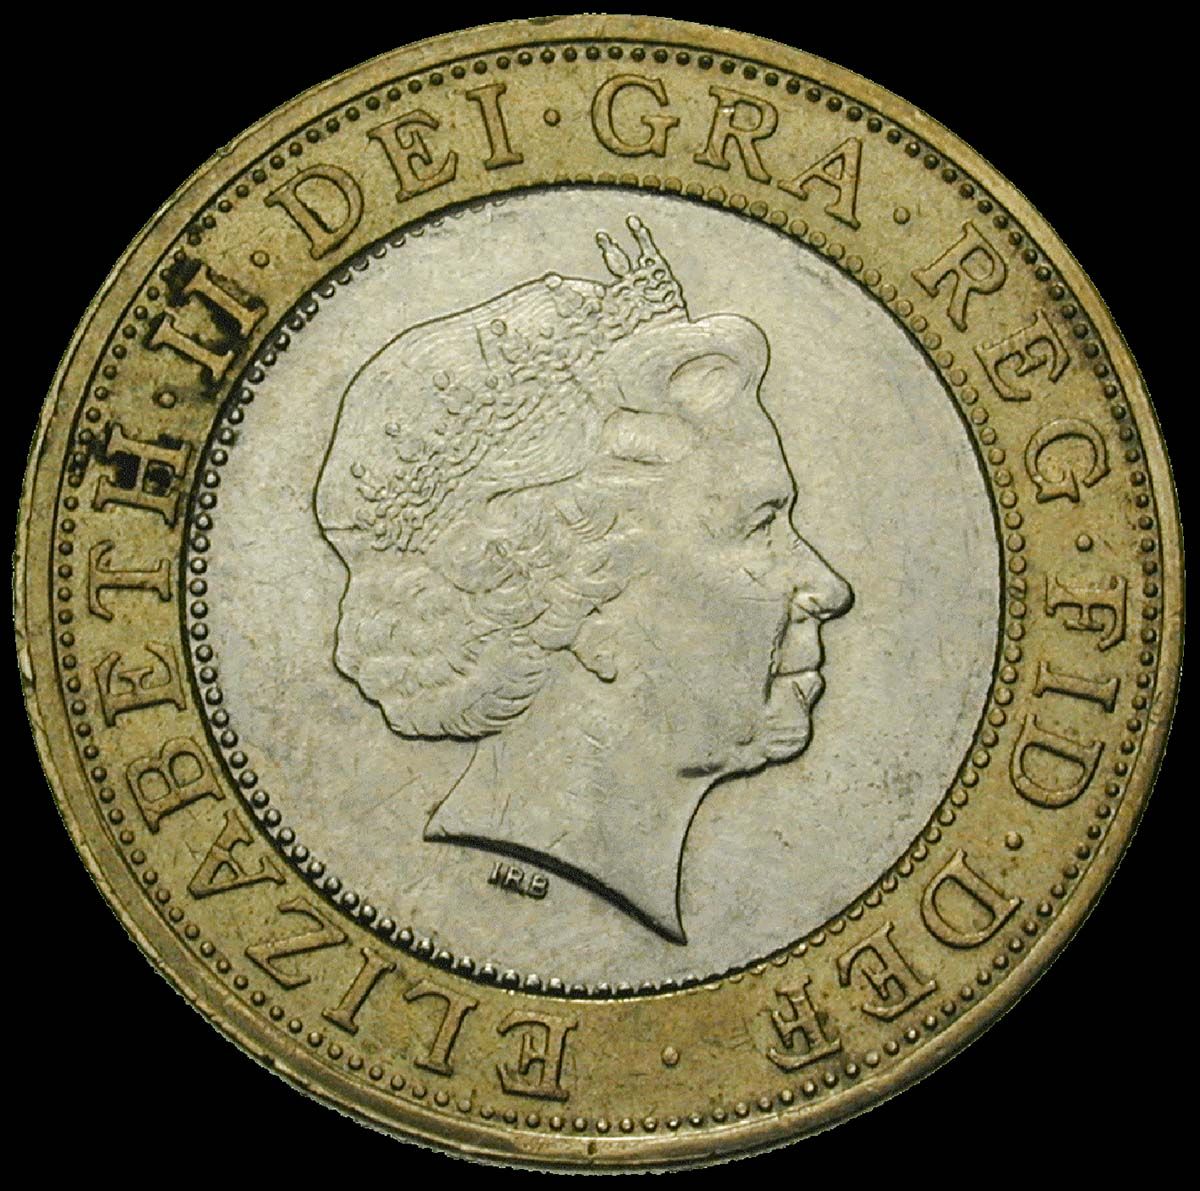 Regatul Unit – avers 2 lire 1998 imagine obtinuta prin bunavoința Money Museum Zurich copy